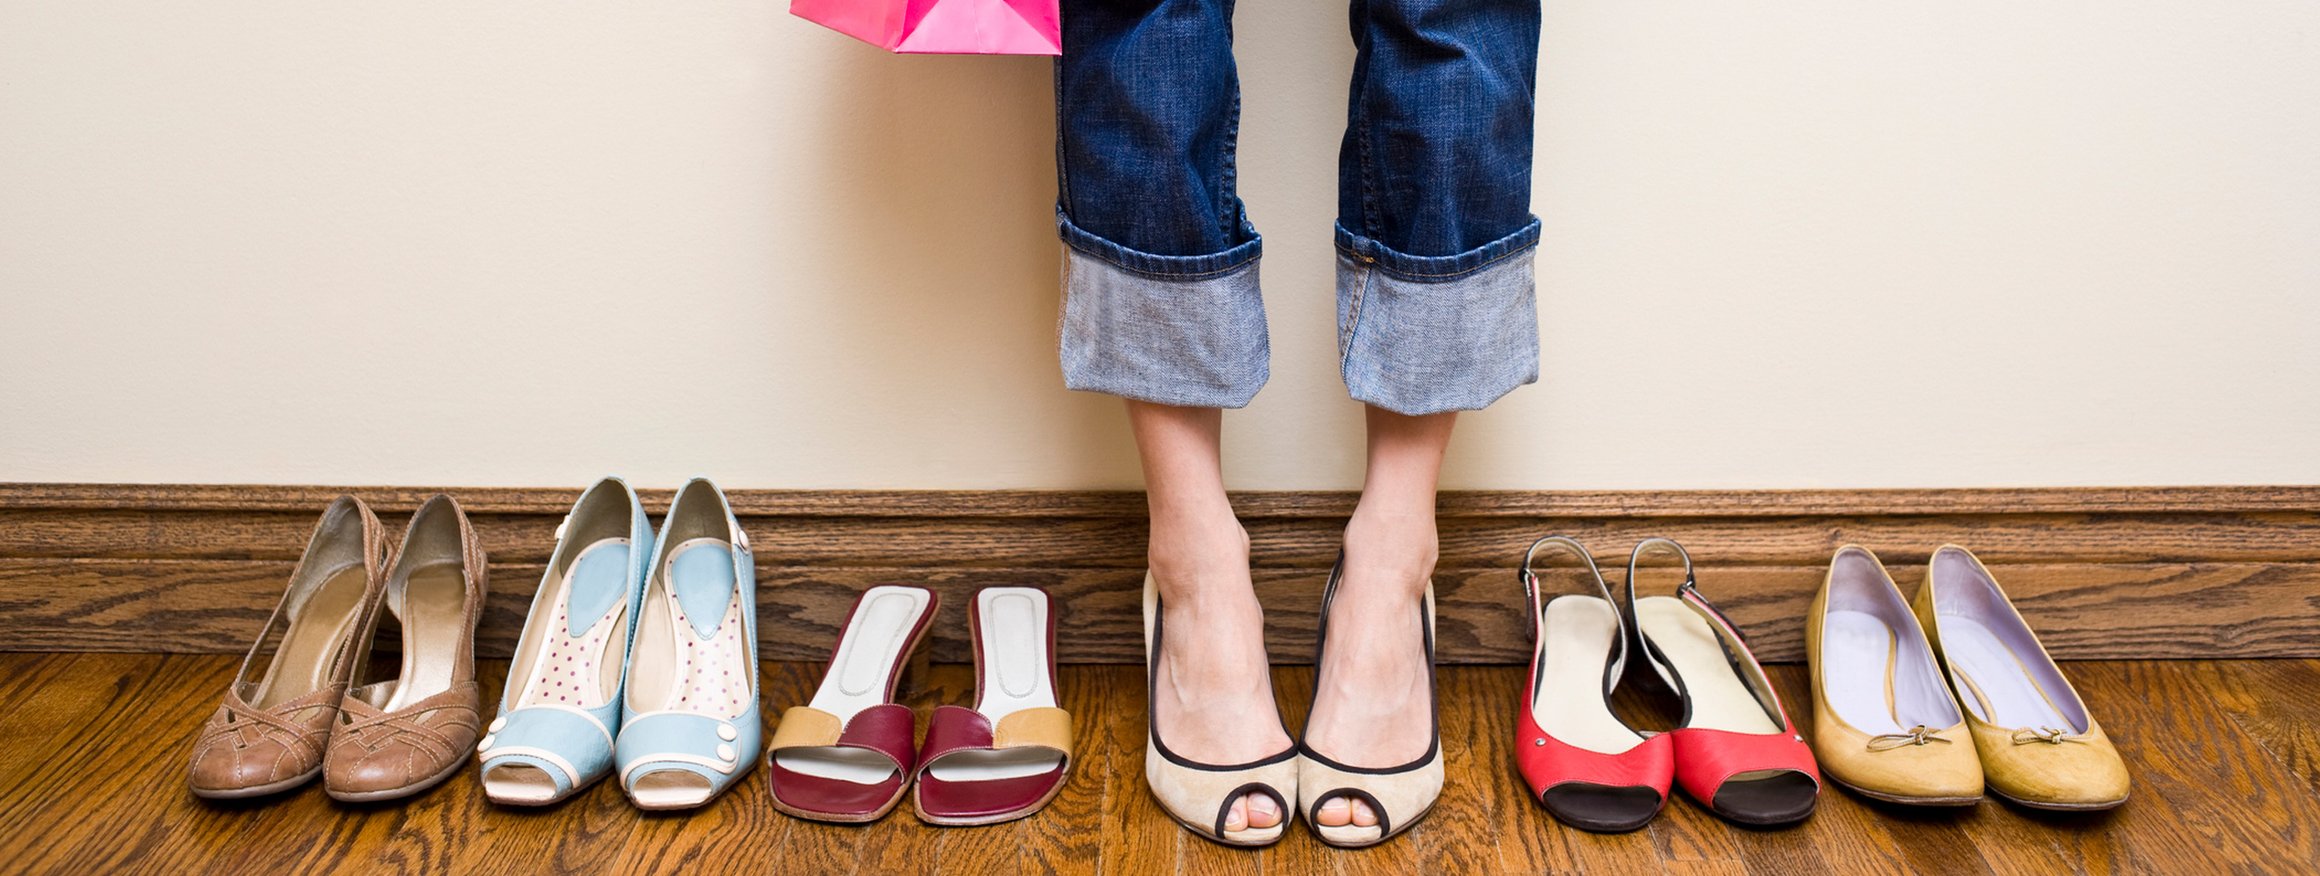 Eine Frau steht mit ihrer Einkaufstüte bei ihren vielen Schuh und konsumiert immer mehr